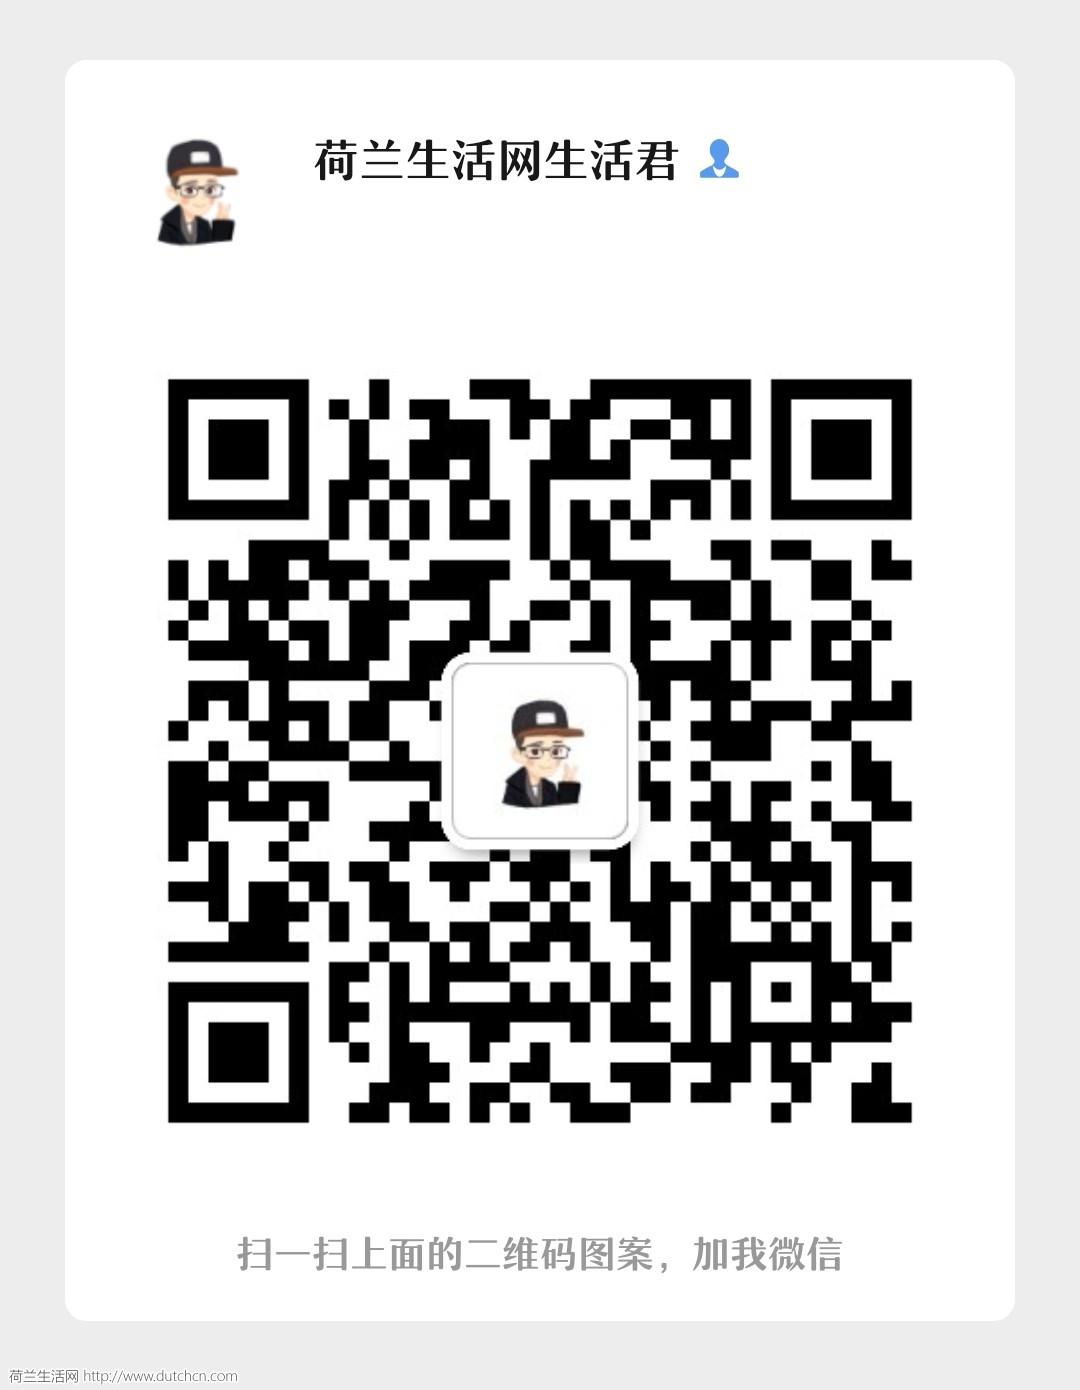 WeChat Image_20190916134132.jpg